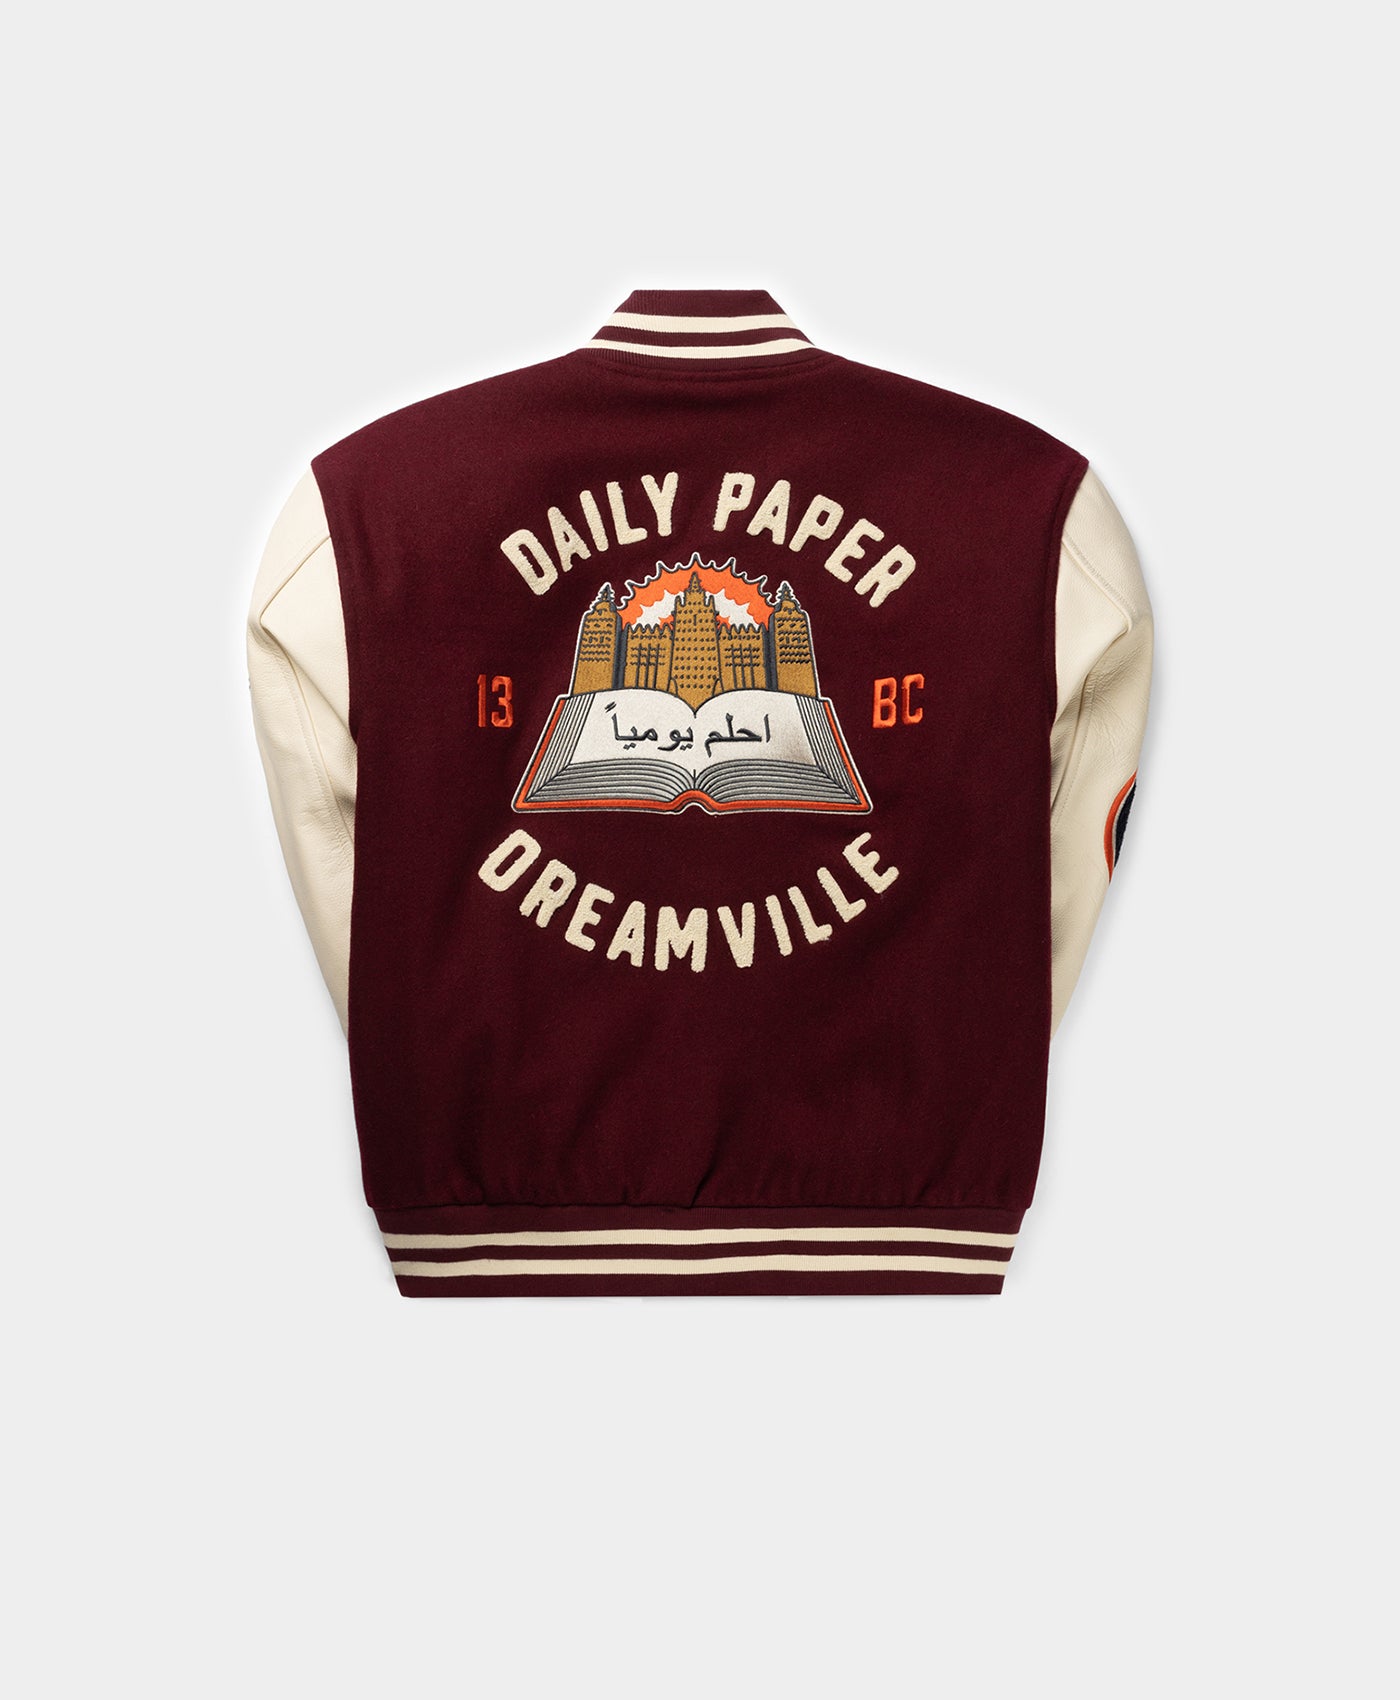 DP - Daily Paper x Dreamville Bordeaux Cream Varsity Jacket - Packshot - Front